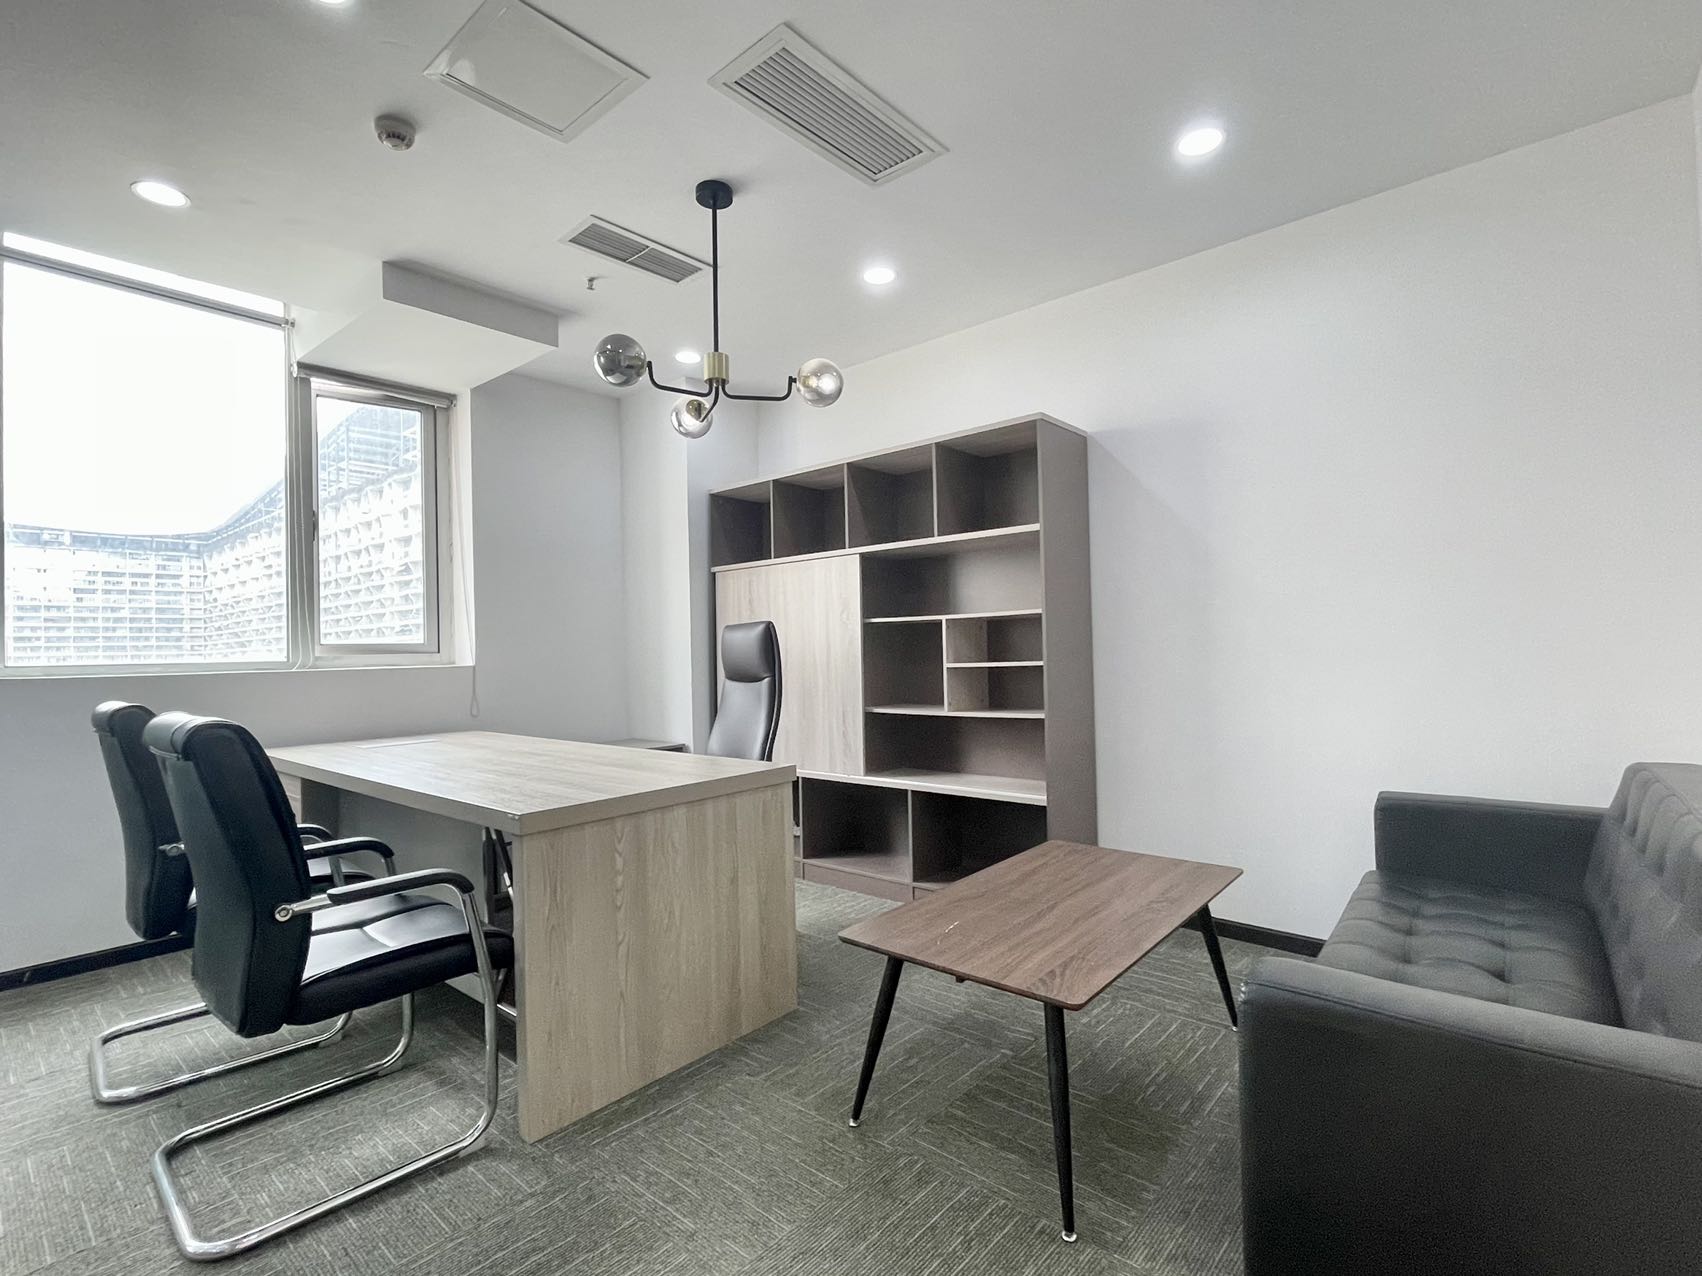 高新区新世纪环球中心160平精装小面积办公室 交通便利 位置优越